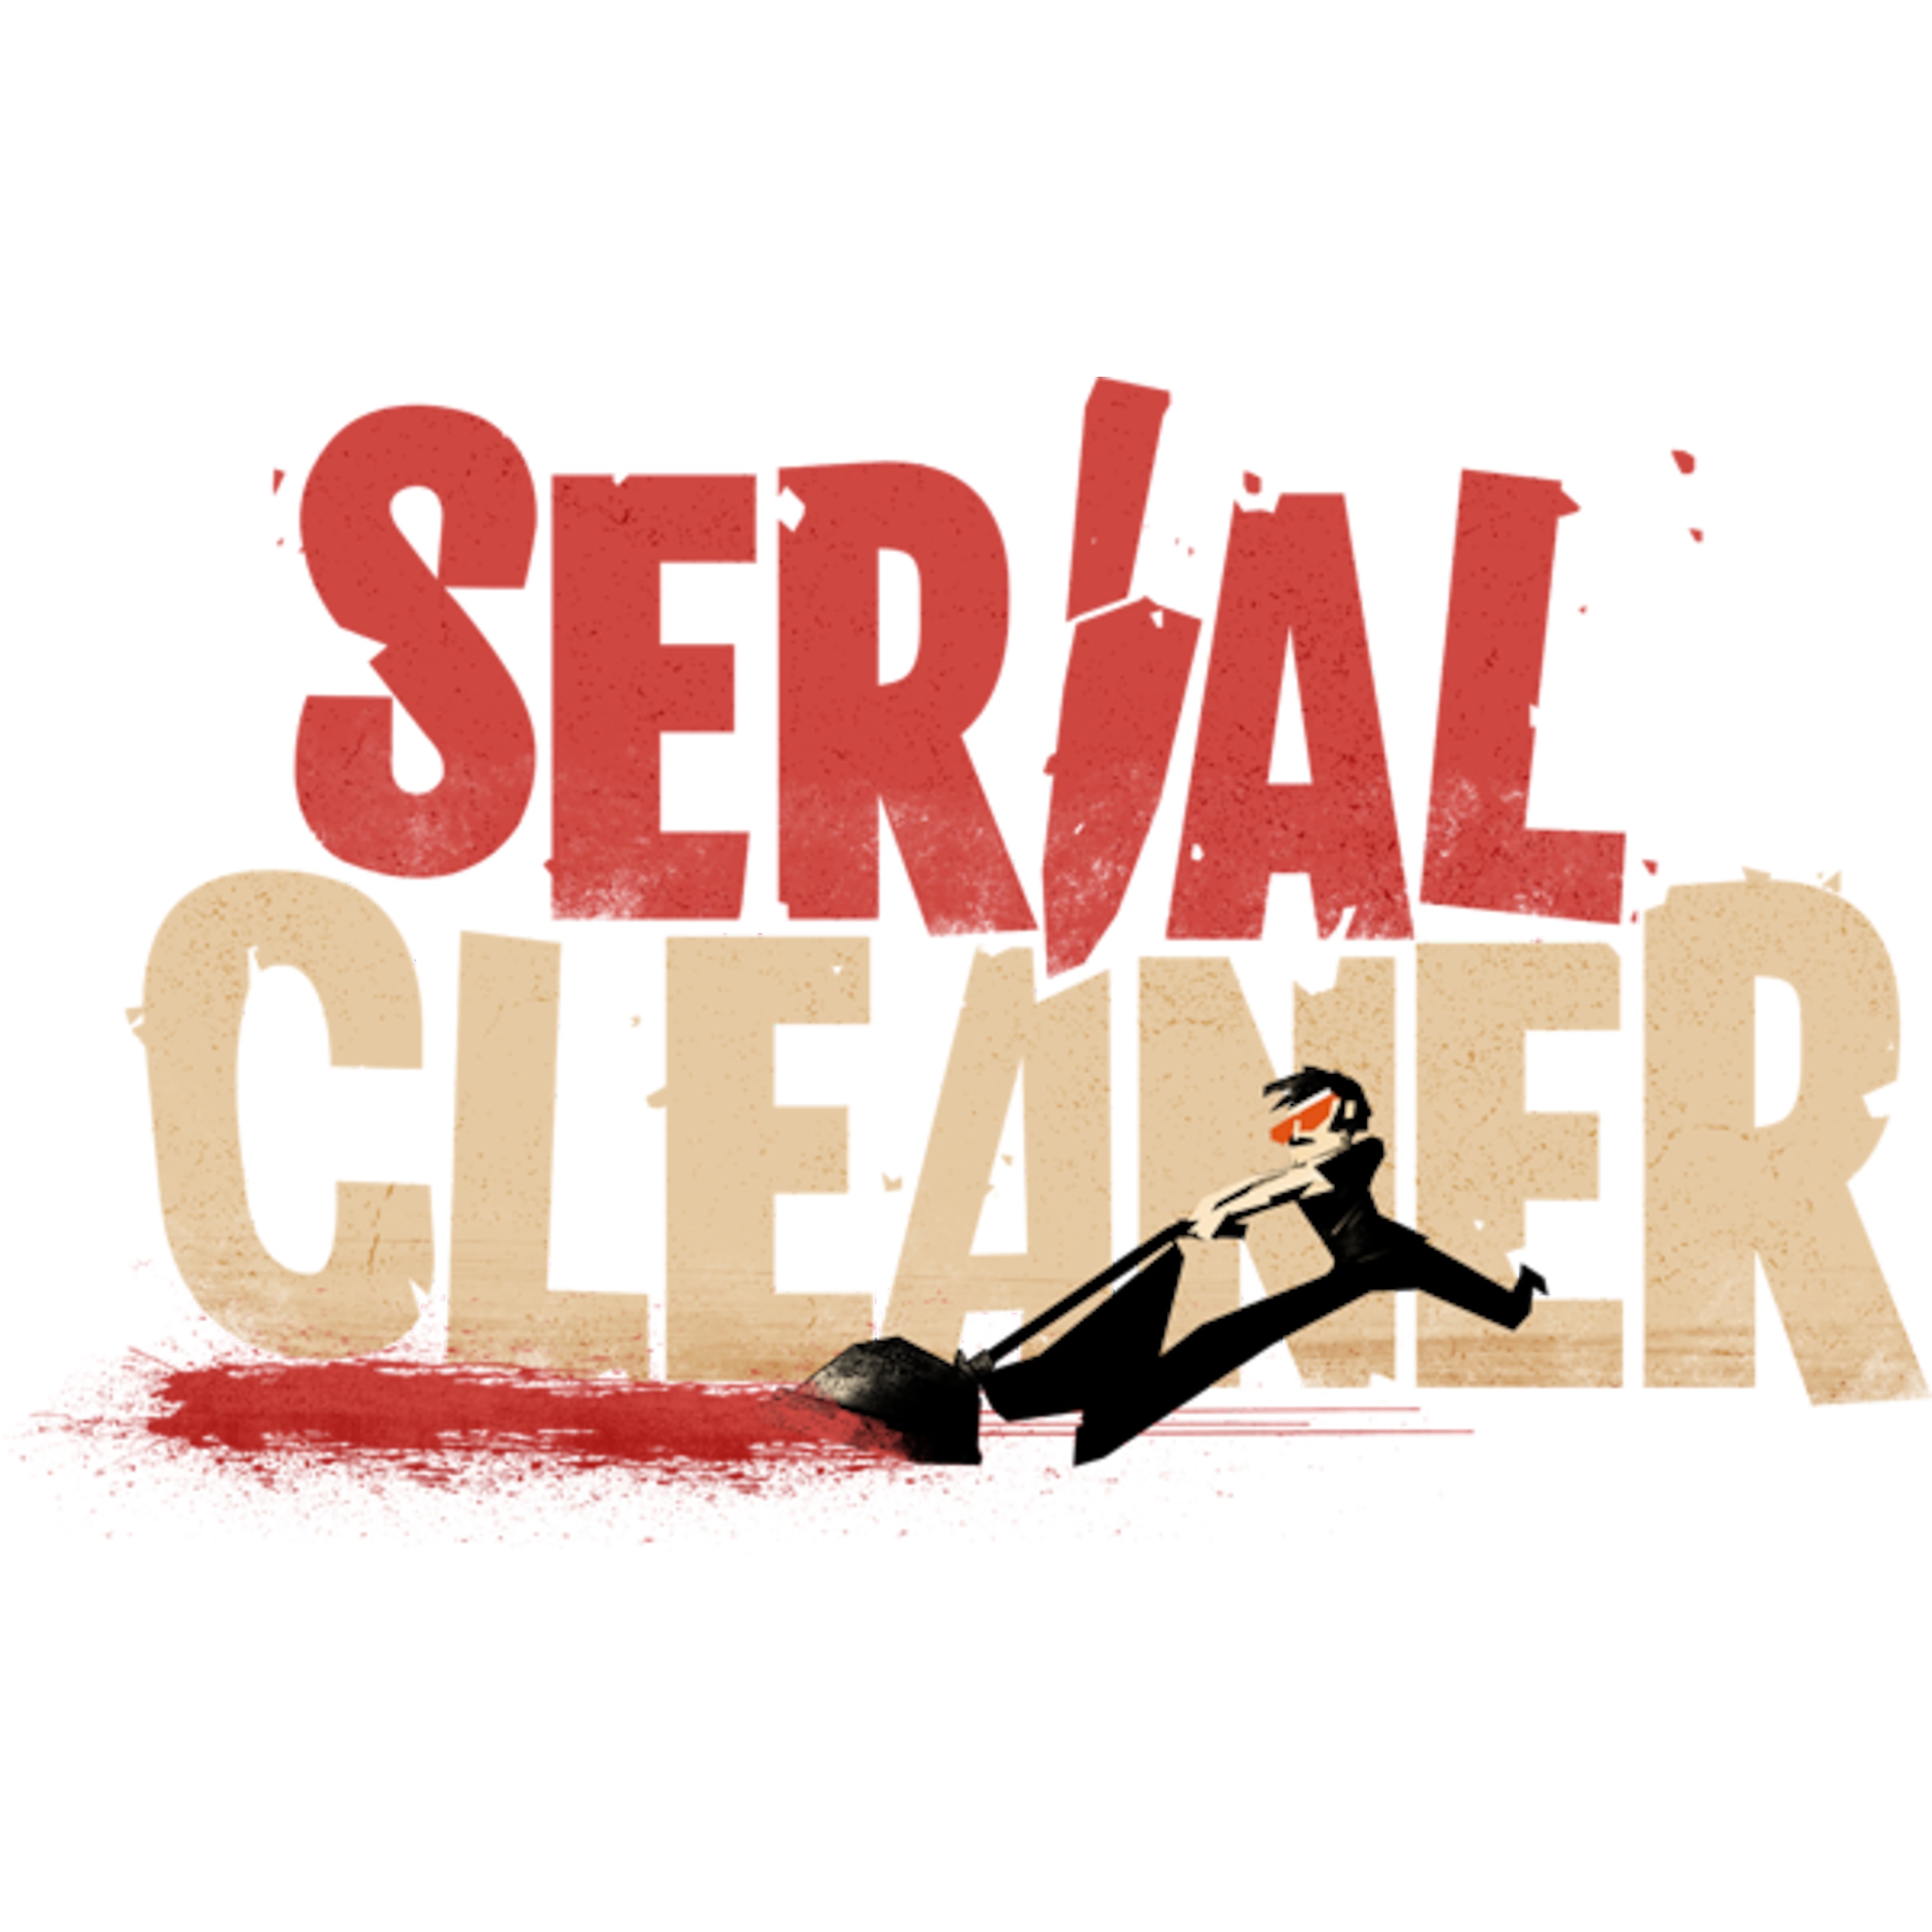 serial cleaner